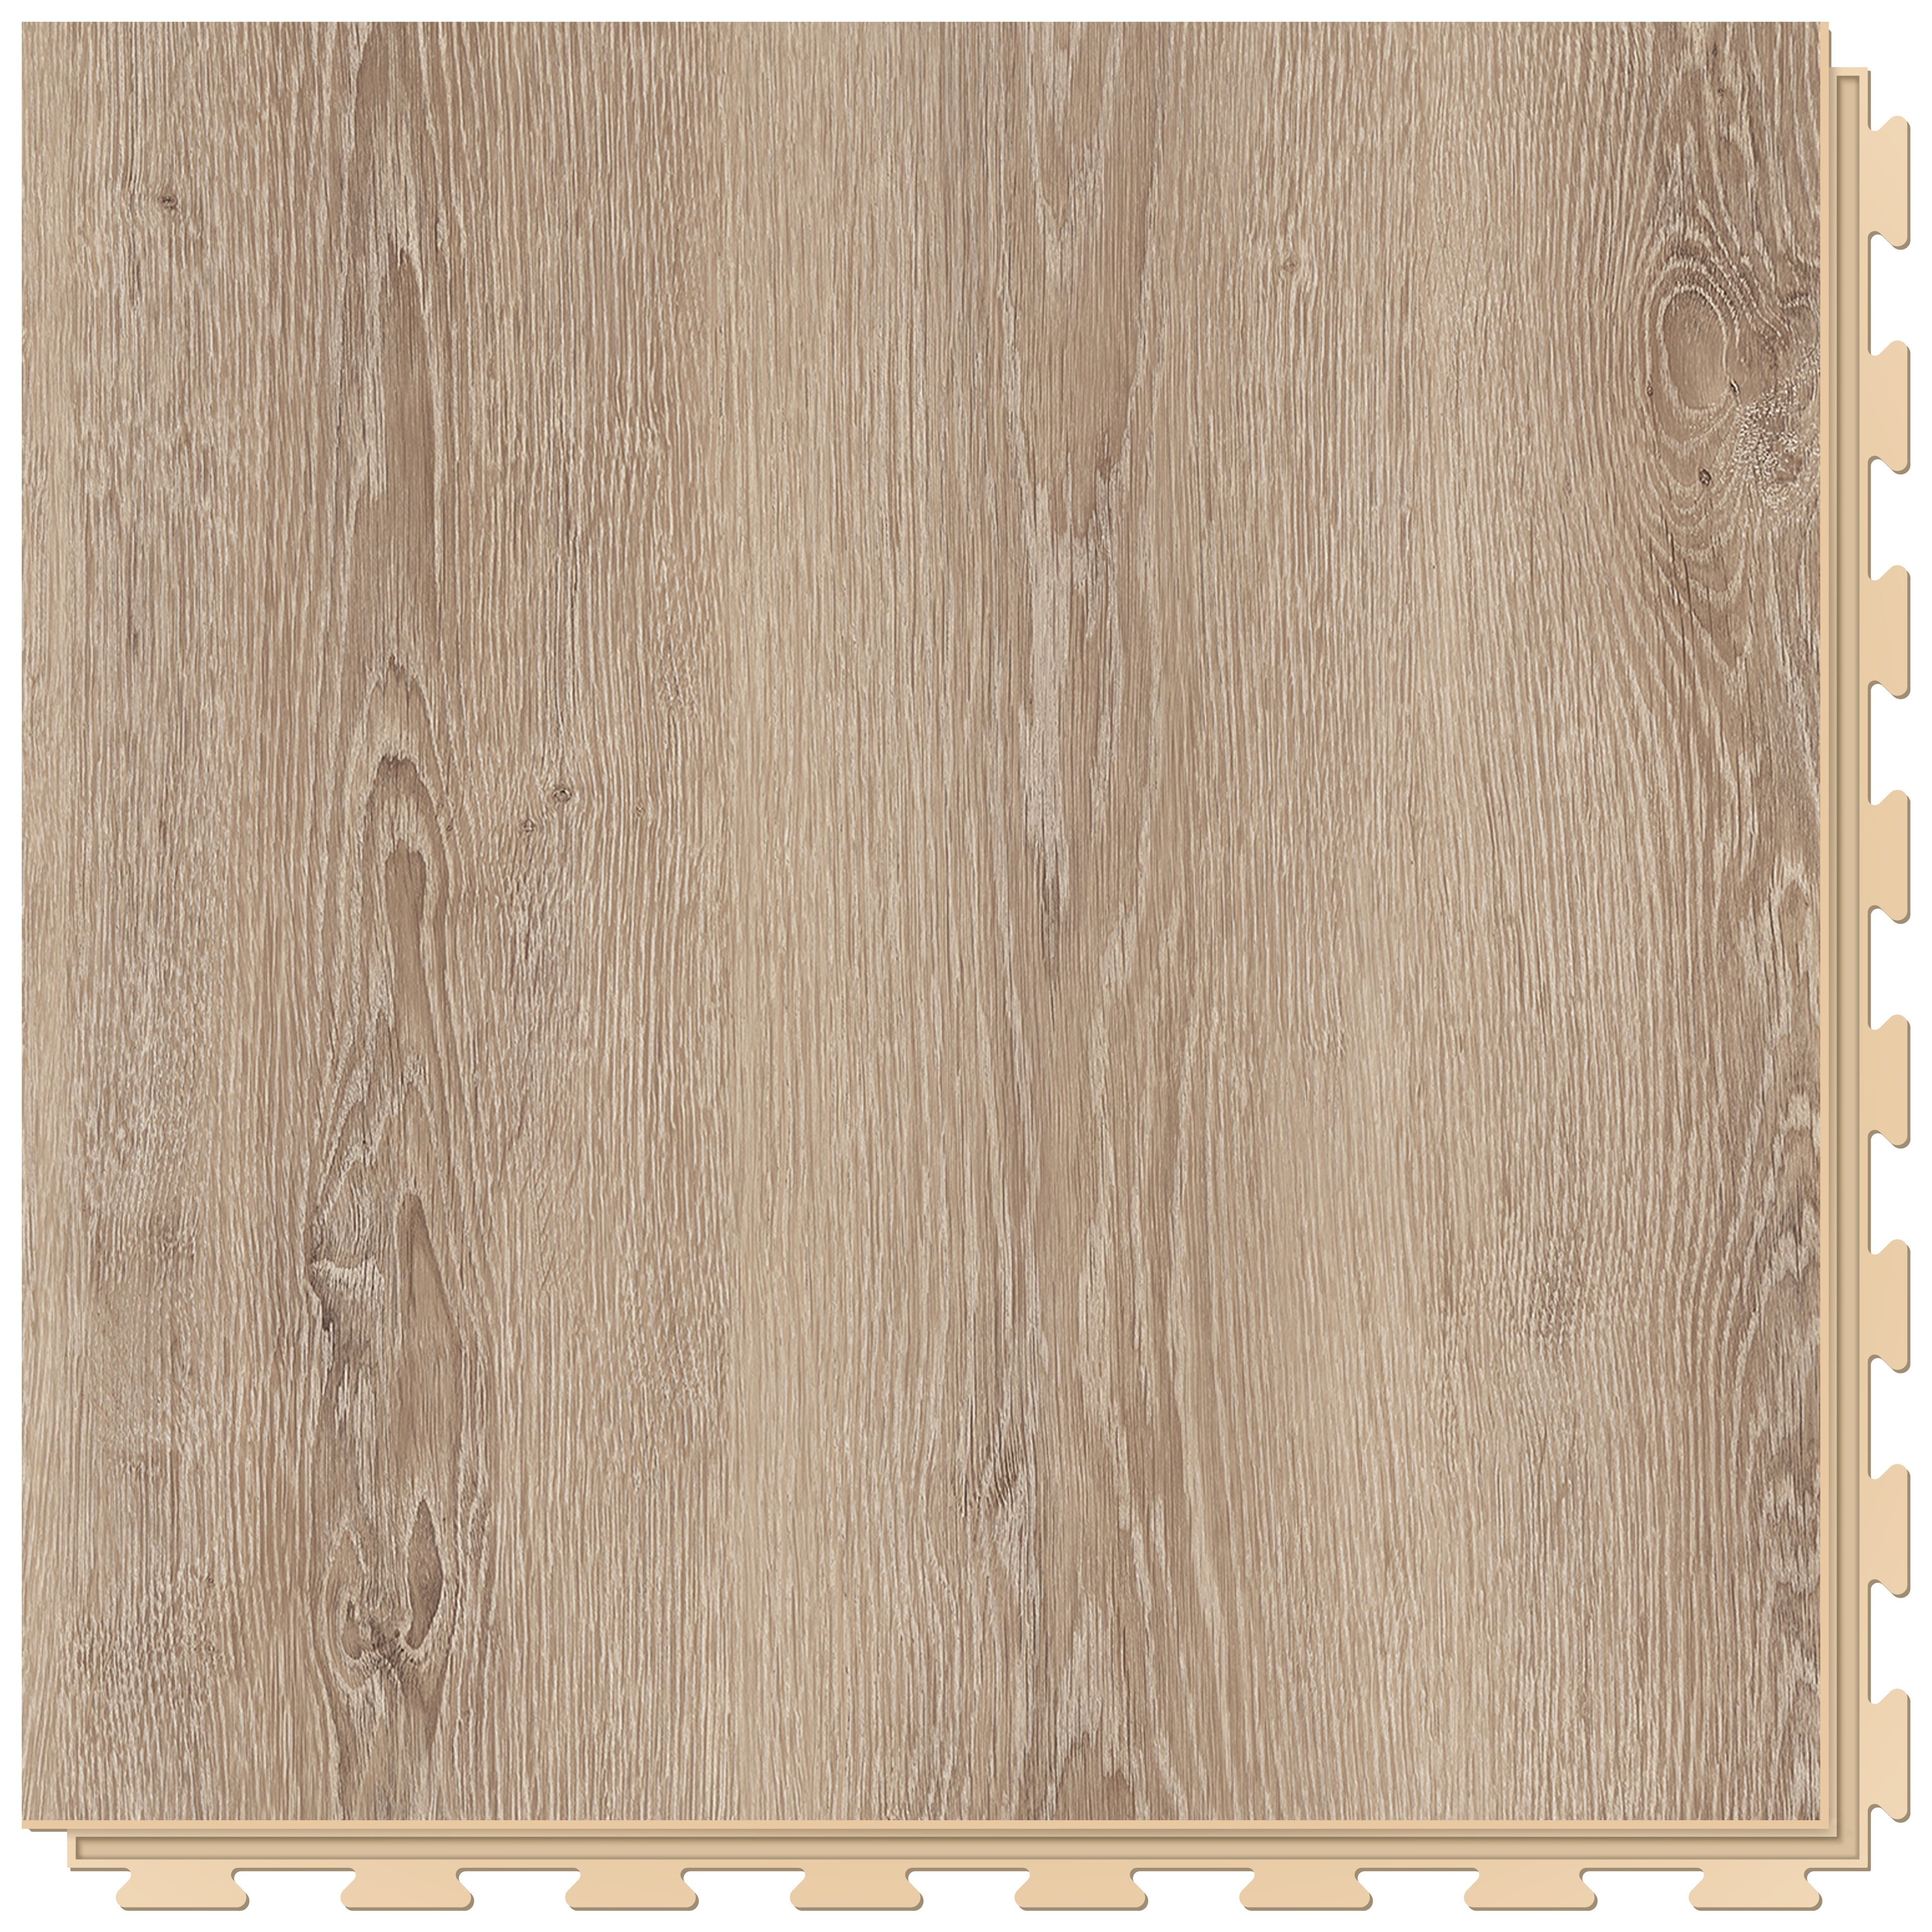 Hnědá vinylová PVC dlaždice Fortelock Business Beige Tyrolean oak W001 - délka 66,8 cm, šířka 66,8 cm, výška 0,7 cm